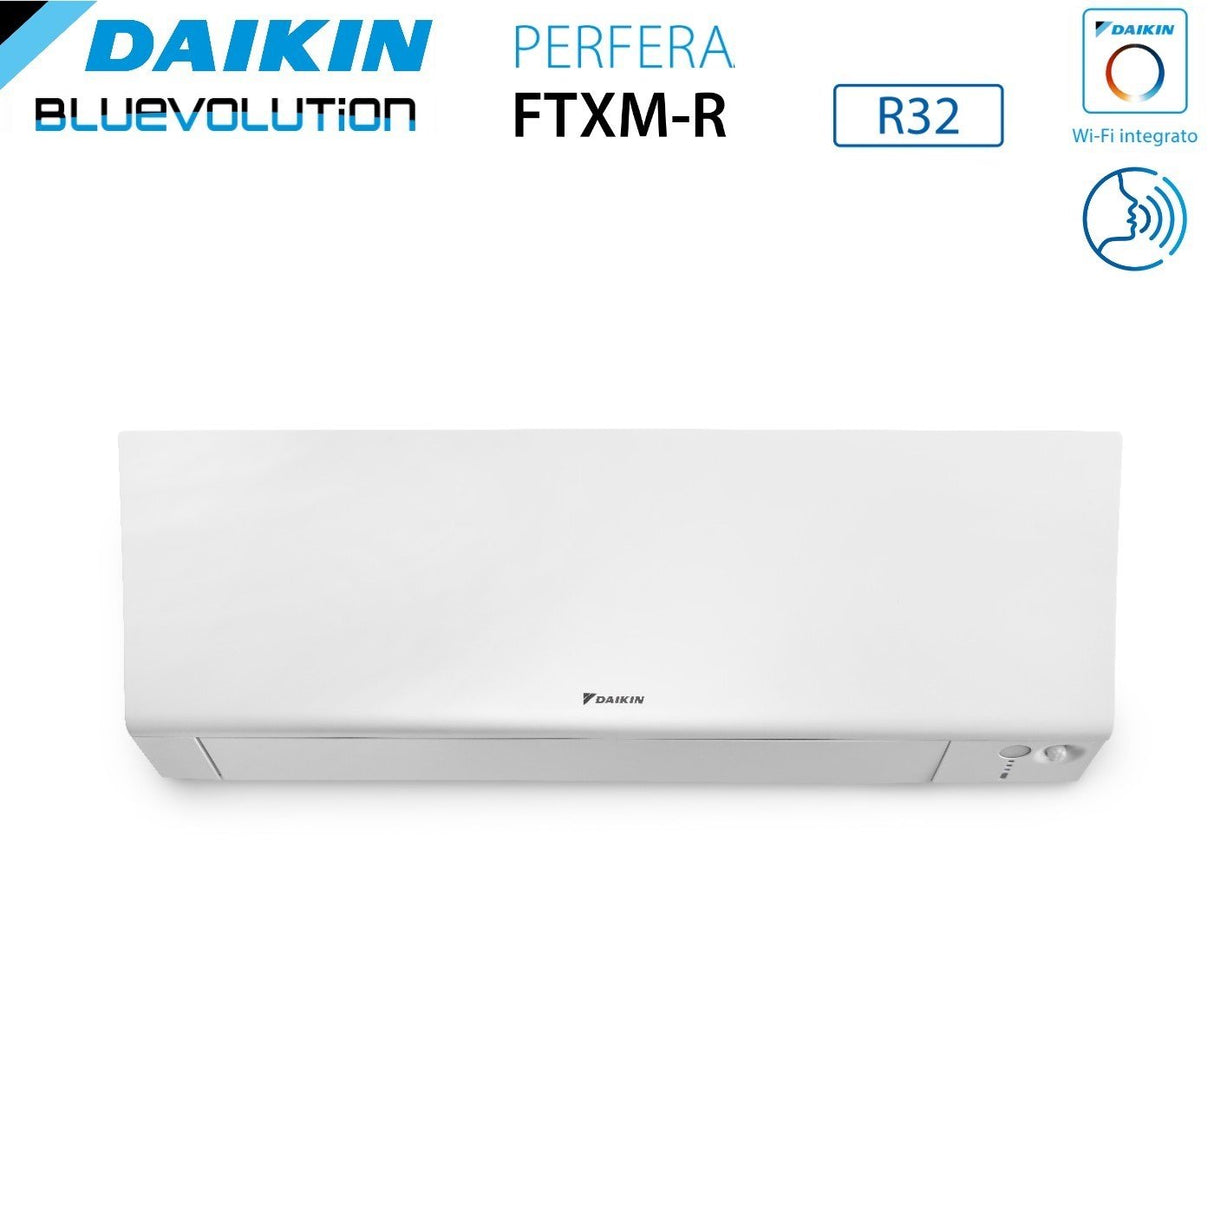 immagine-3-daikin-climatizzatore-condizionatore-daikin-bluevolution-quadri-split-inverter-serie-ftxmr-perfera-wall-7999-con-4mxm80a-r-32-wi-fi-integrato-7000900090009000-garanzia-italiana